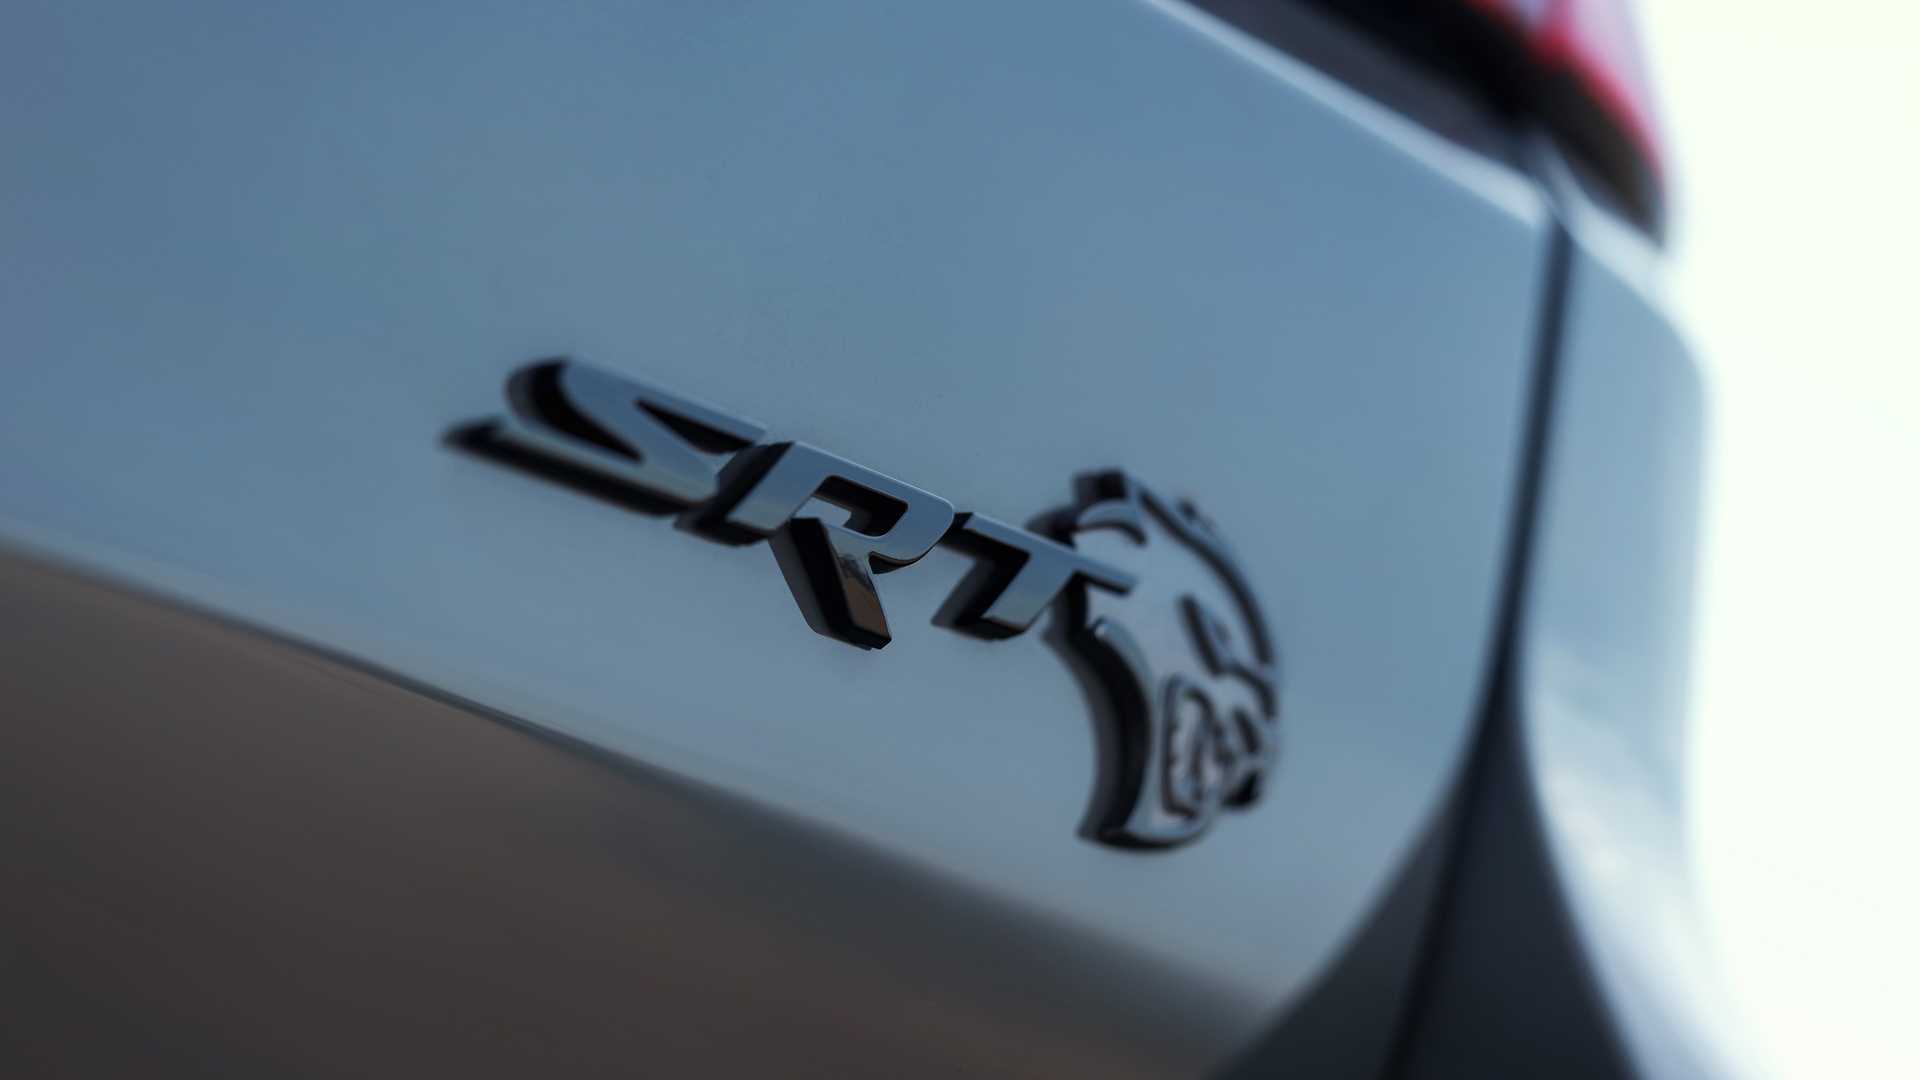 دودج تكشف عن دورانجو SRT هيلكات 2021 كأقوى SUV في العالم 67